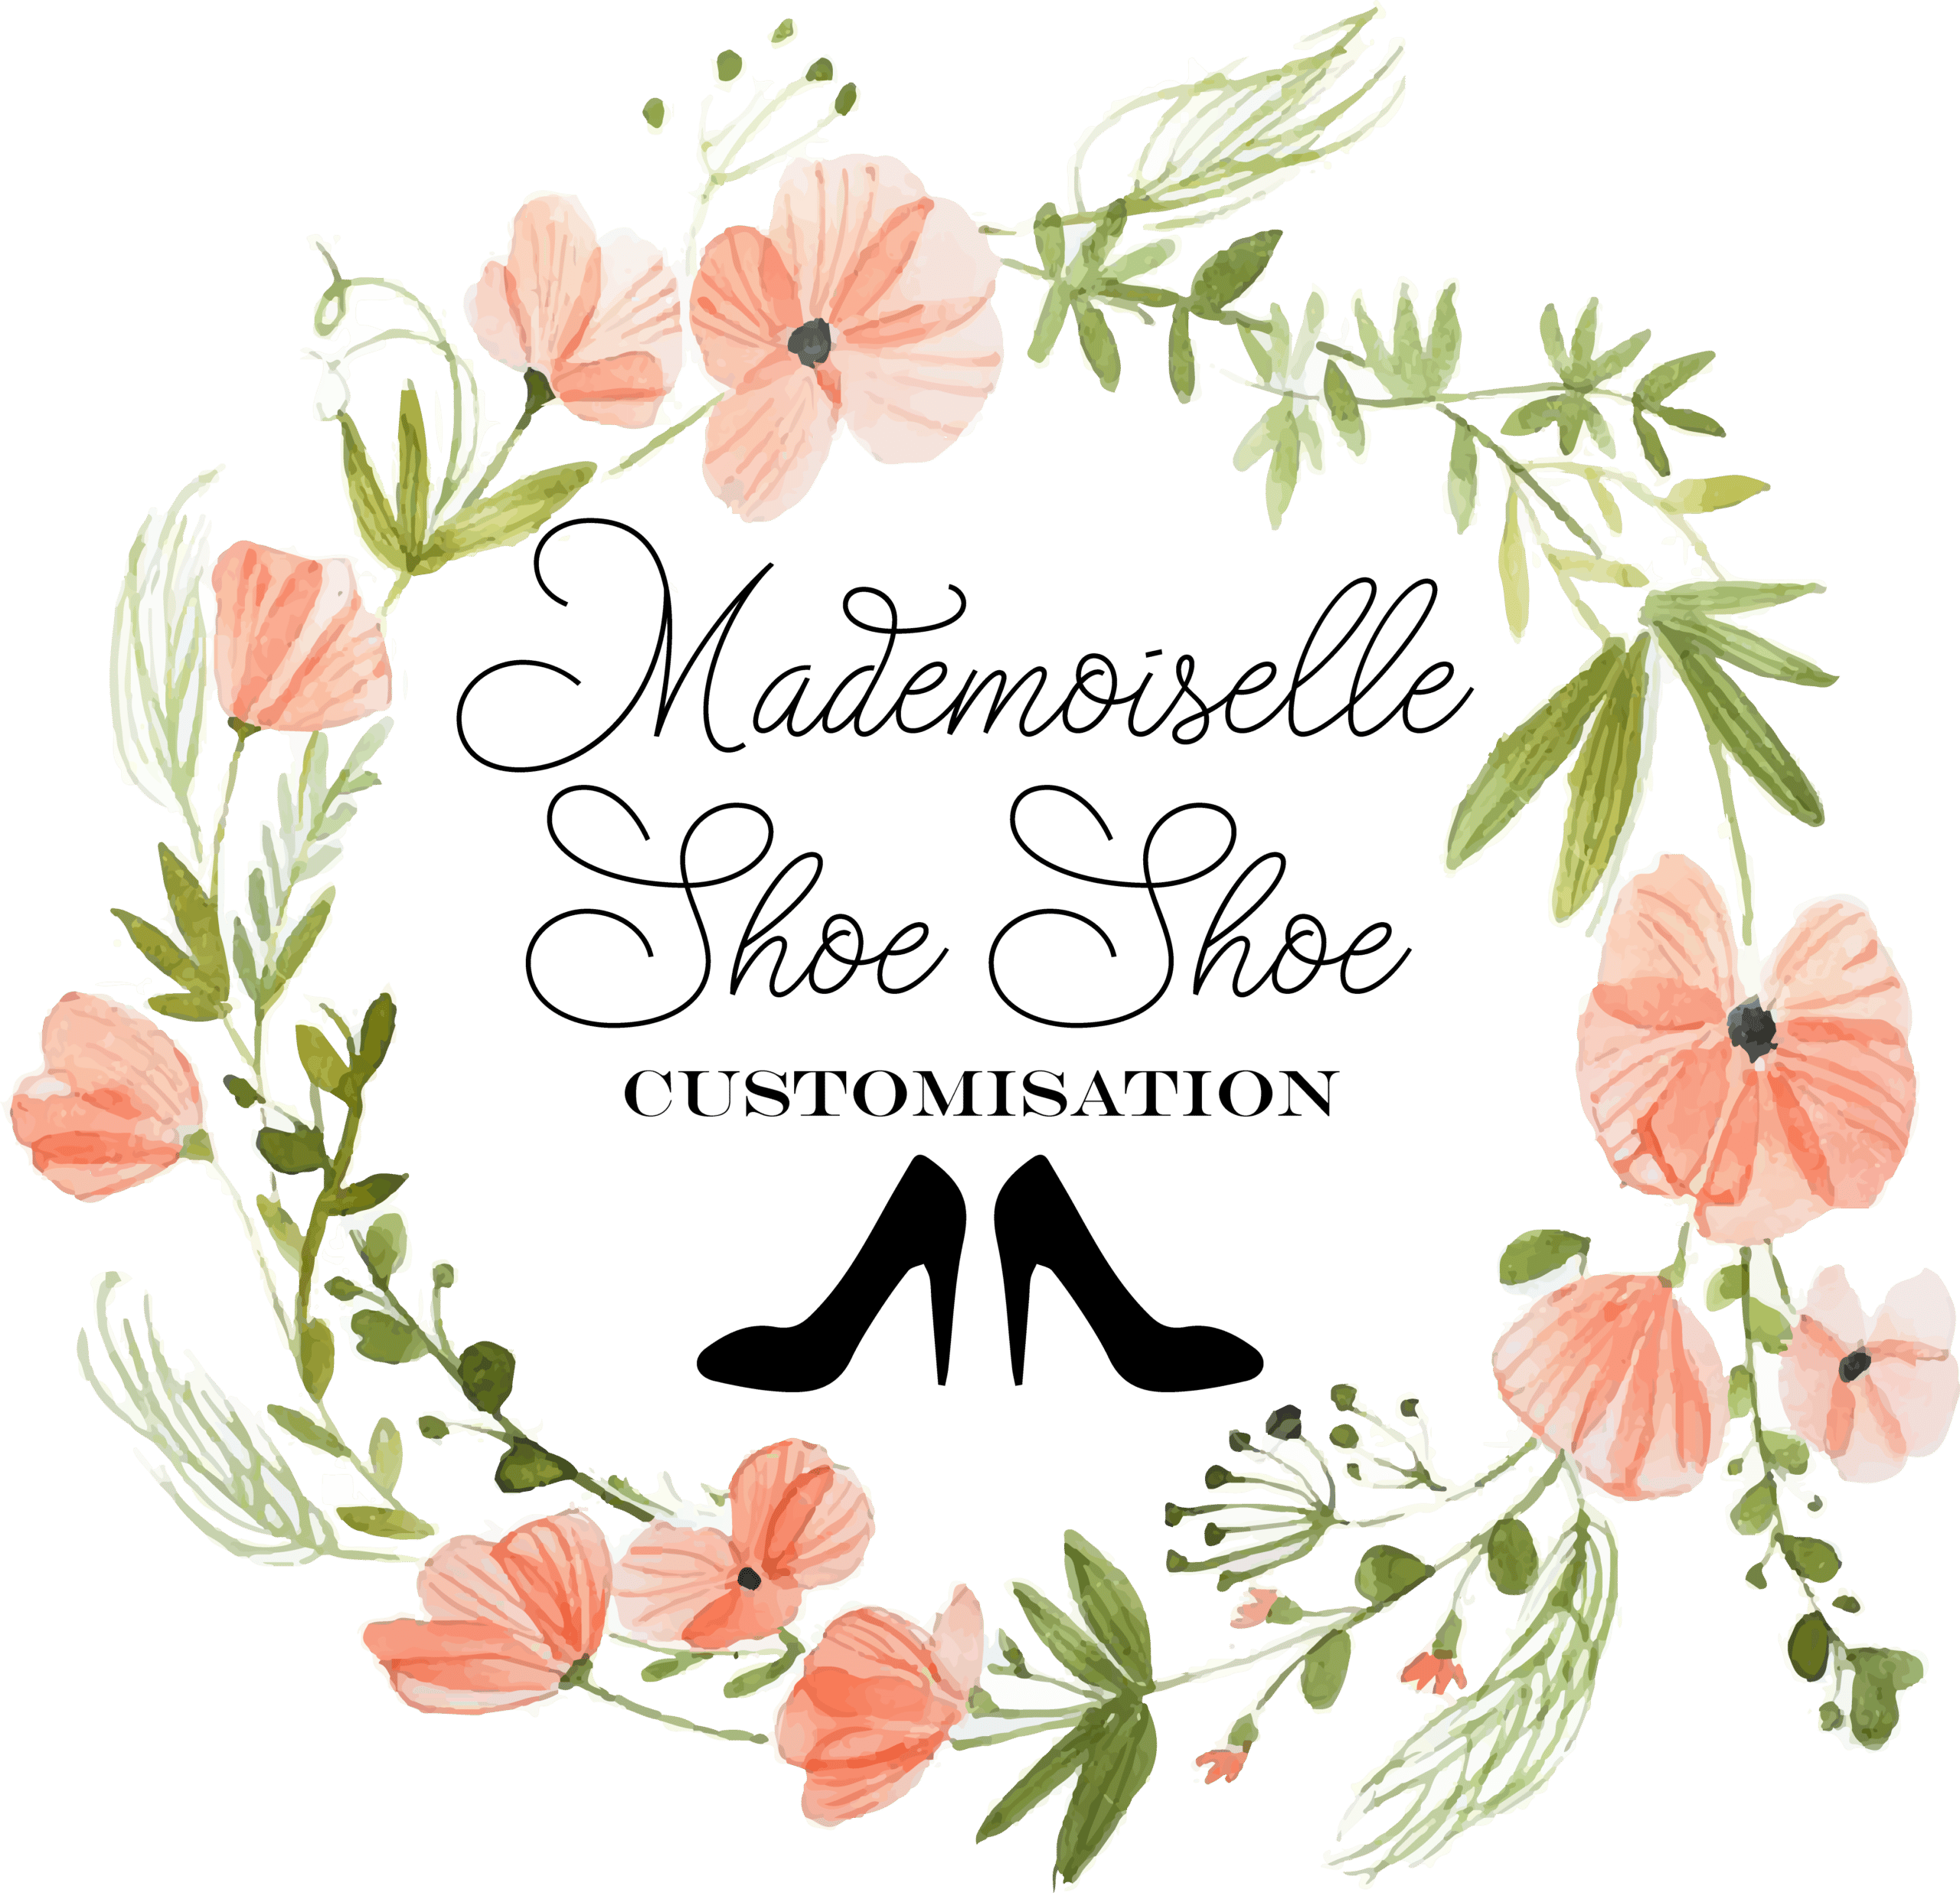 LOGO Mademoiselle Shoe Shoe